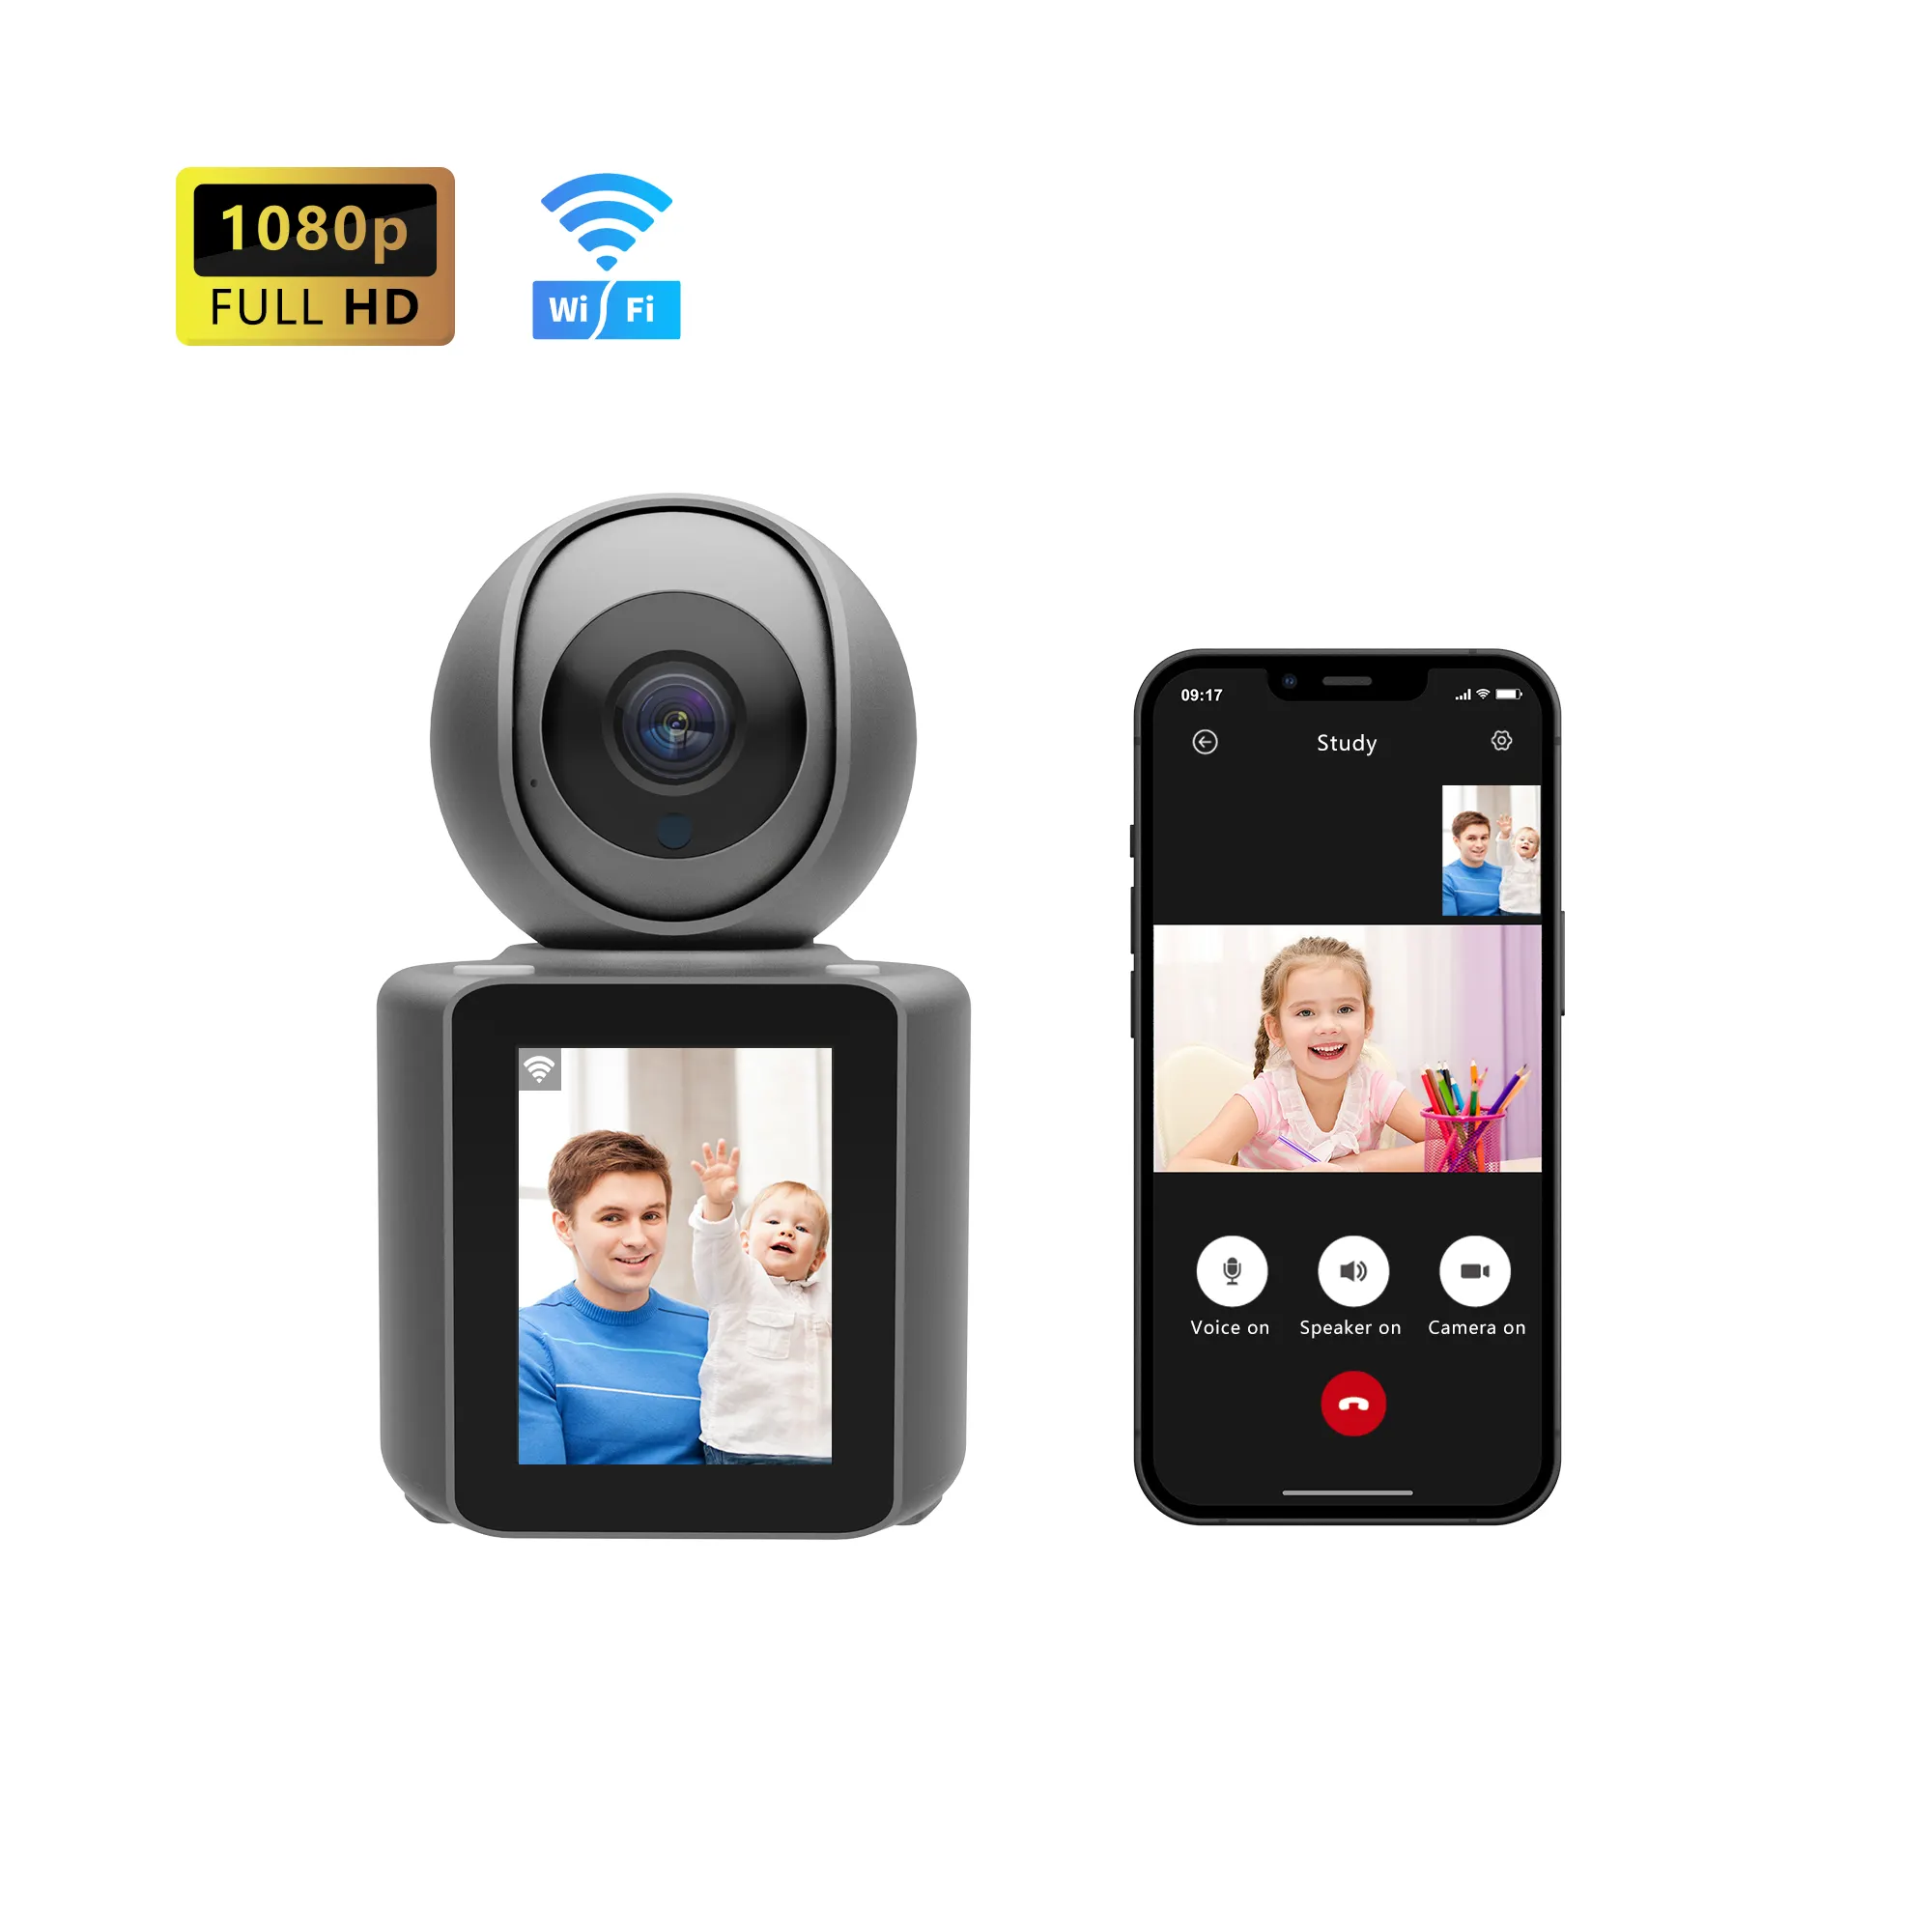 WIFI IP kamera 1080P otomatik izleme tek bir tıklama Video çağrı ekran kapalı bebek izleme monitörü güvenlik CCTV gözetim kamerası PTZ kameralar ile